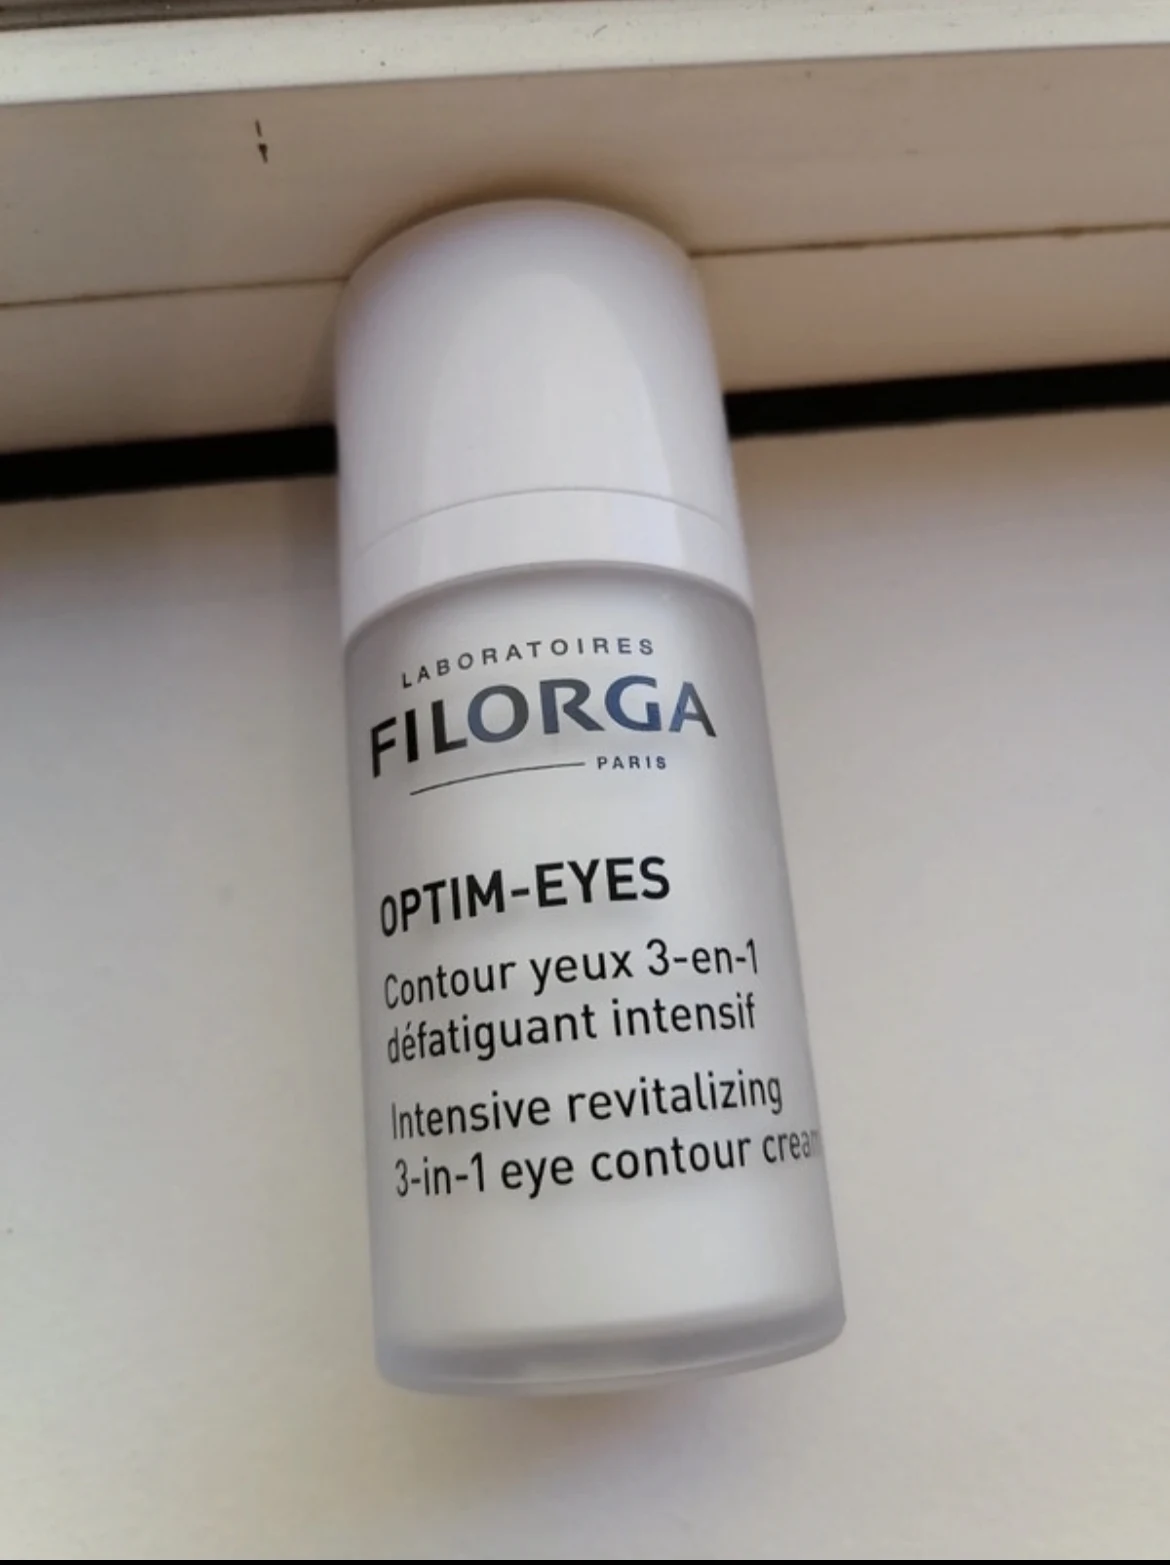 Filorga Paris Optim-Eyes 3-in-1 Eye Contour Cream - 15 ml - review image